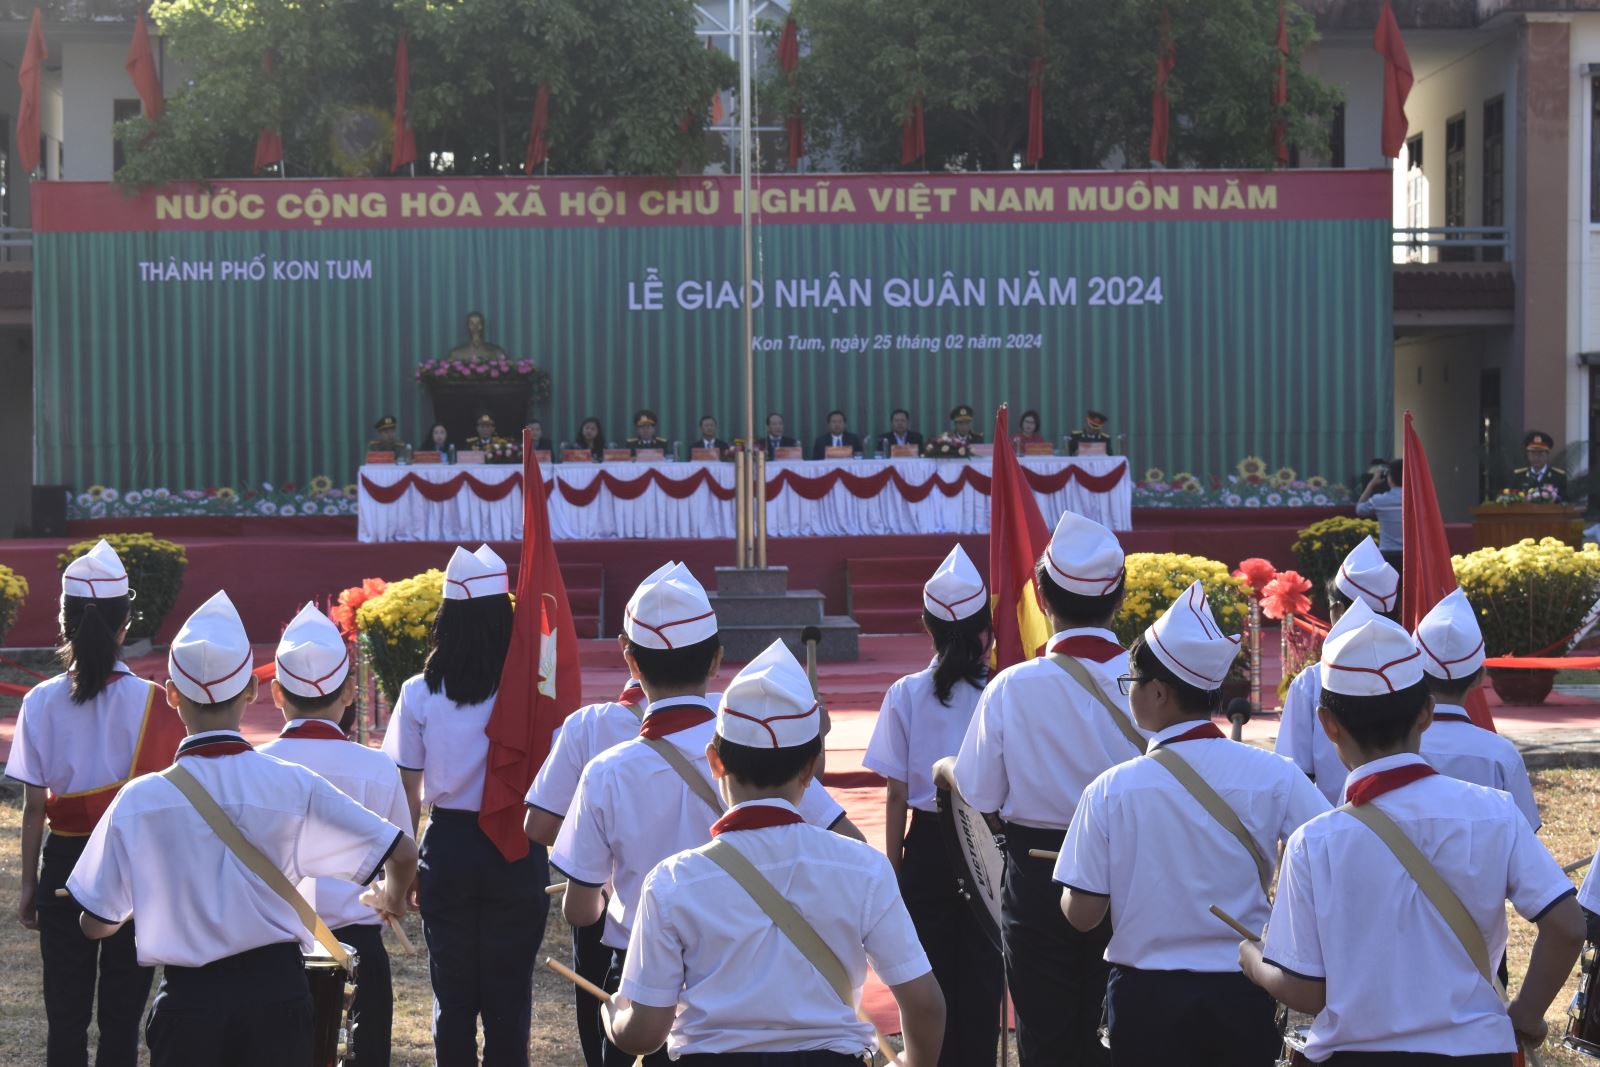 Thành phố Kon Tum tưng bừng tổ chức Lễ giao, nhận quân năm 2014